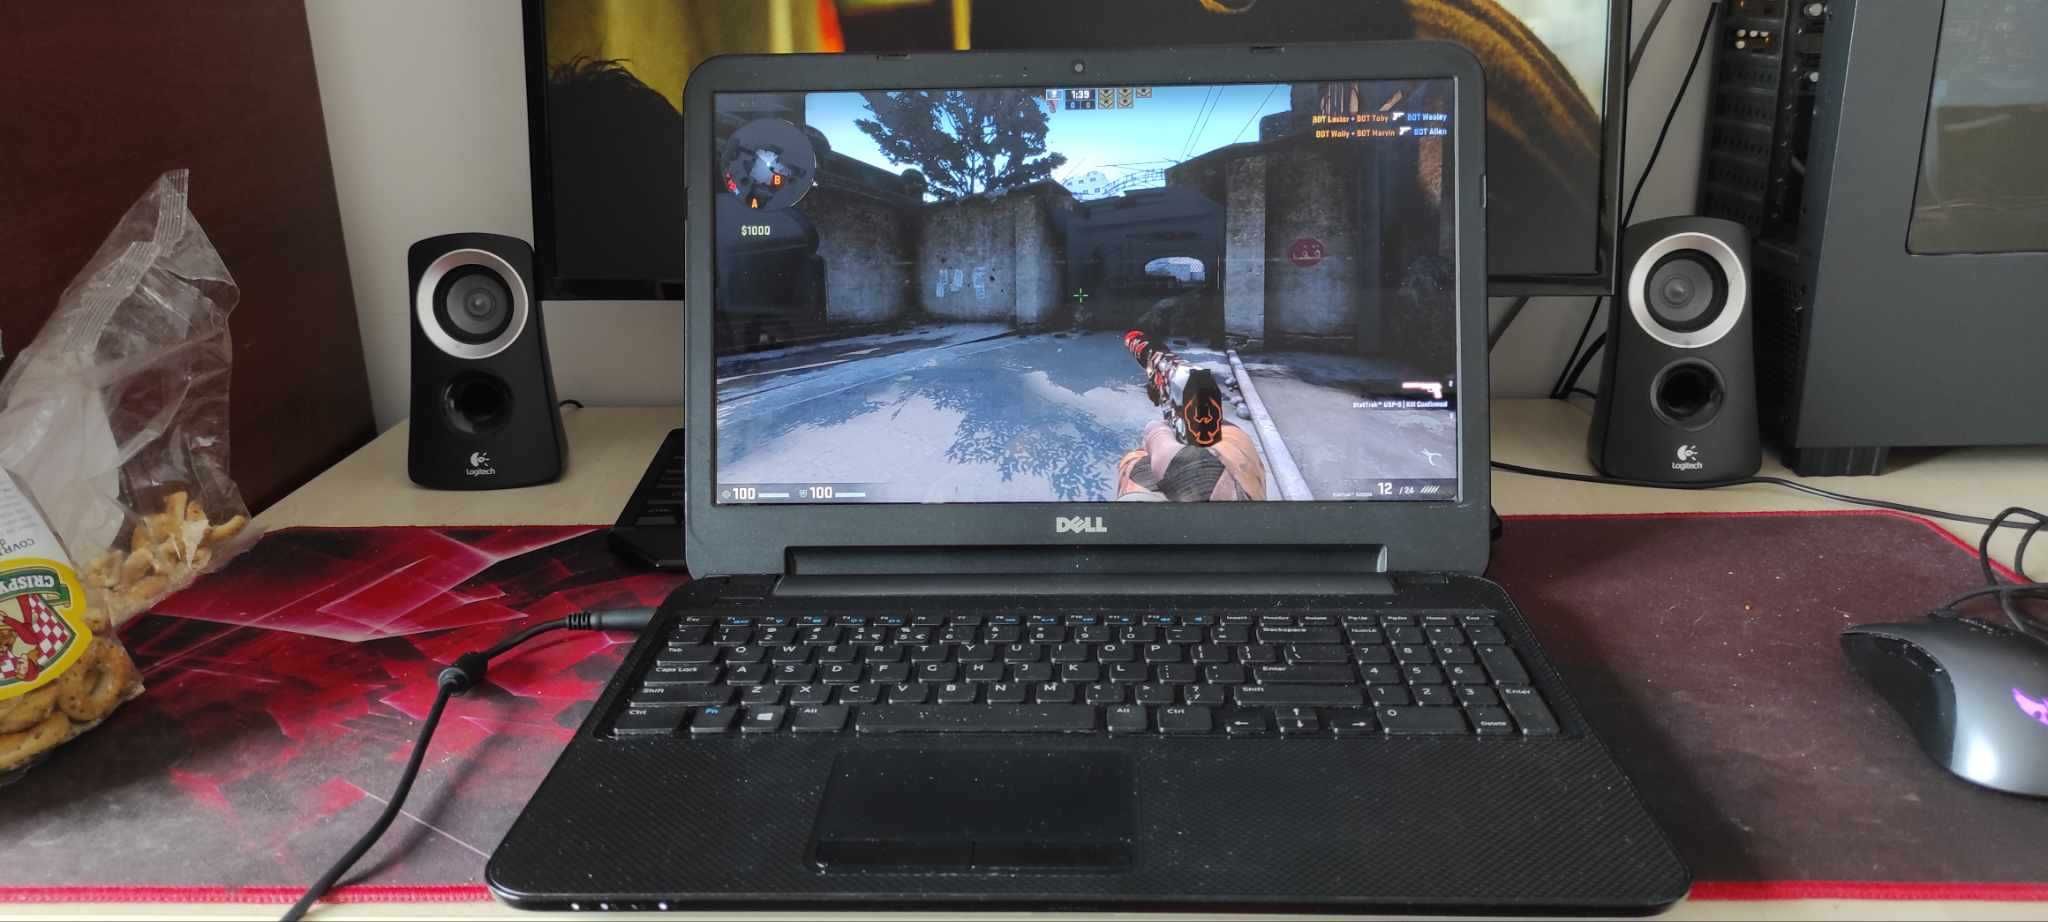 Laptop Dell GAMING i5 TURBO Video Dedicat AMD 2GB cu CSGO!